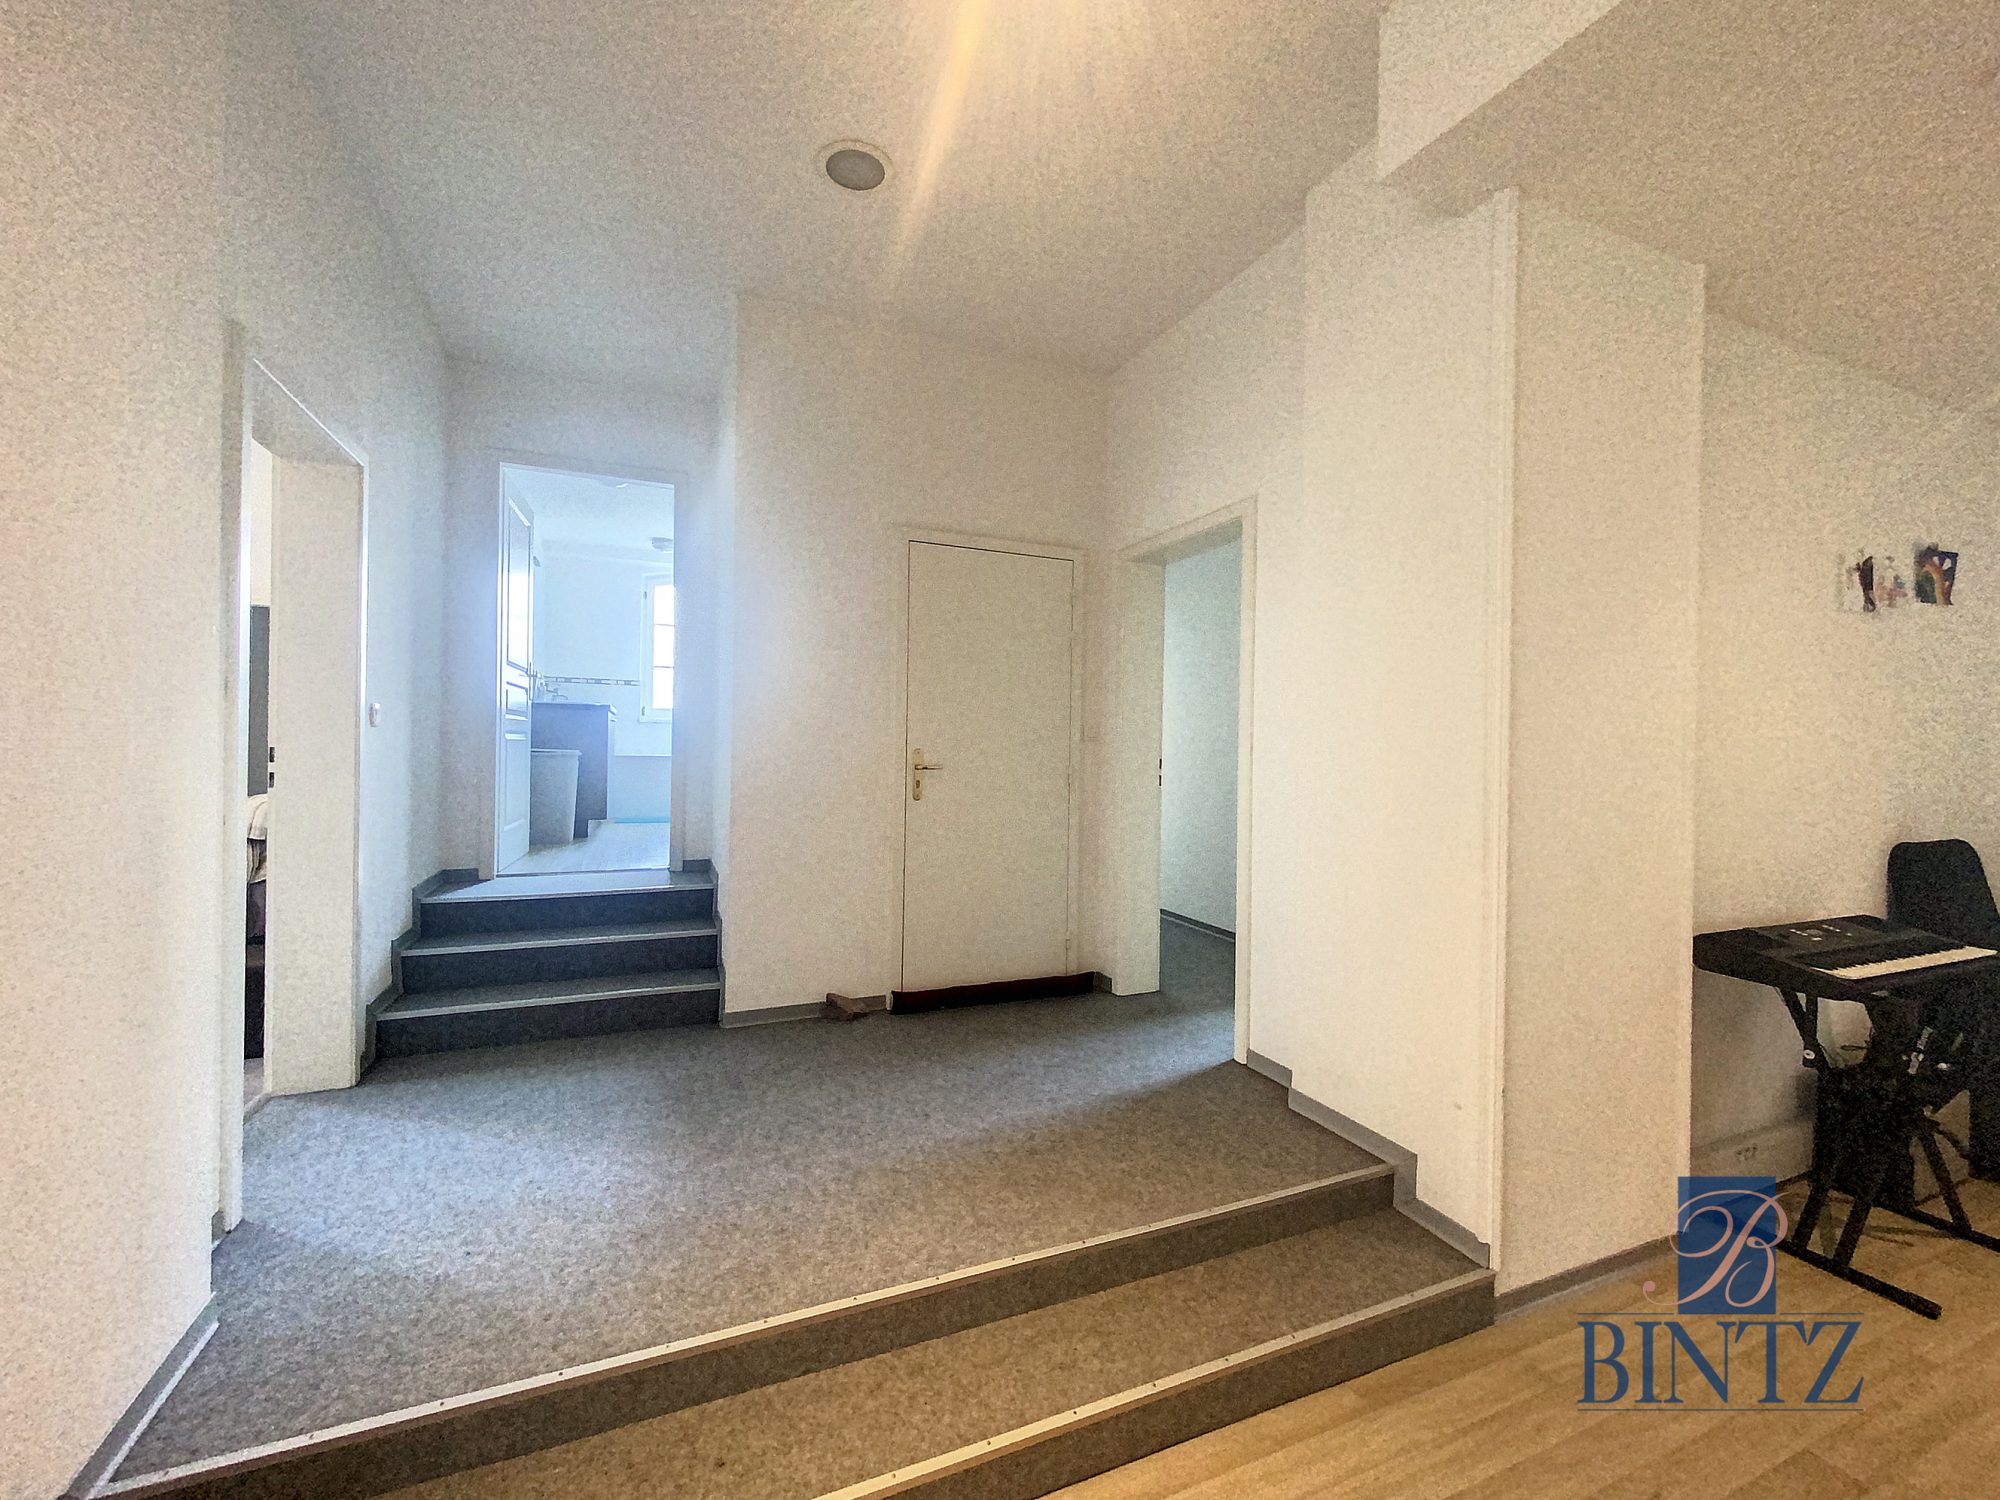 Appartement 122,32m2 dans Monument classé - vente immobilière - Bintz Immobilier - 12